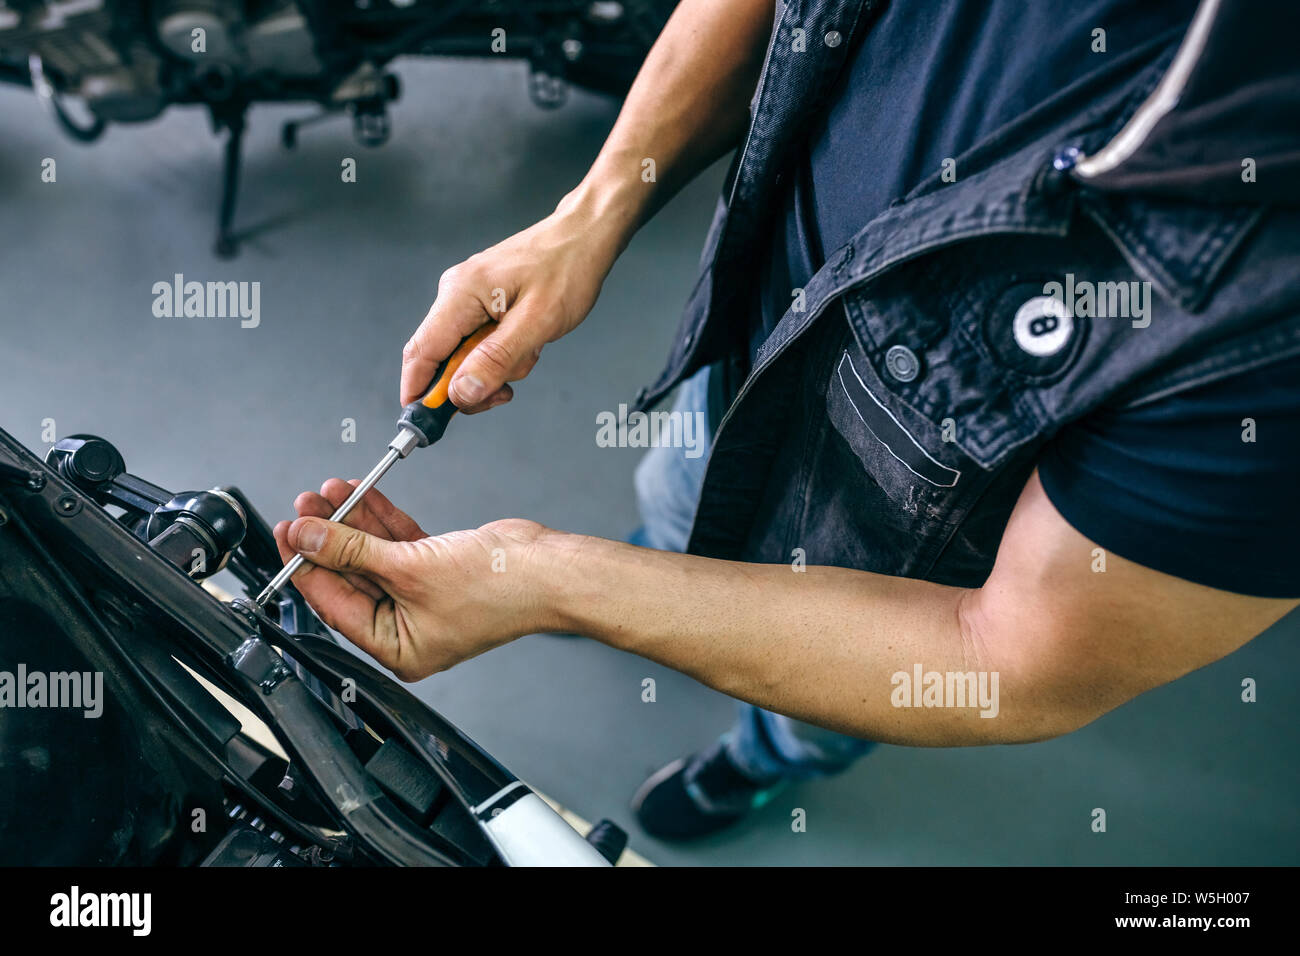 Mechanic repairing customized motorcycle Stock Photo